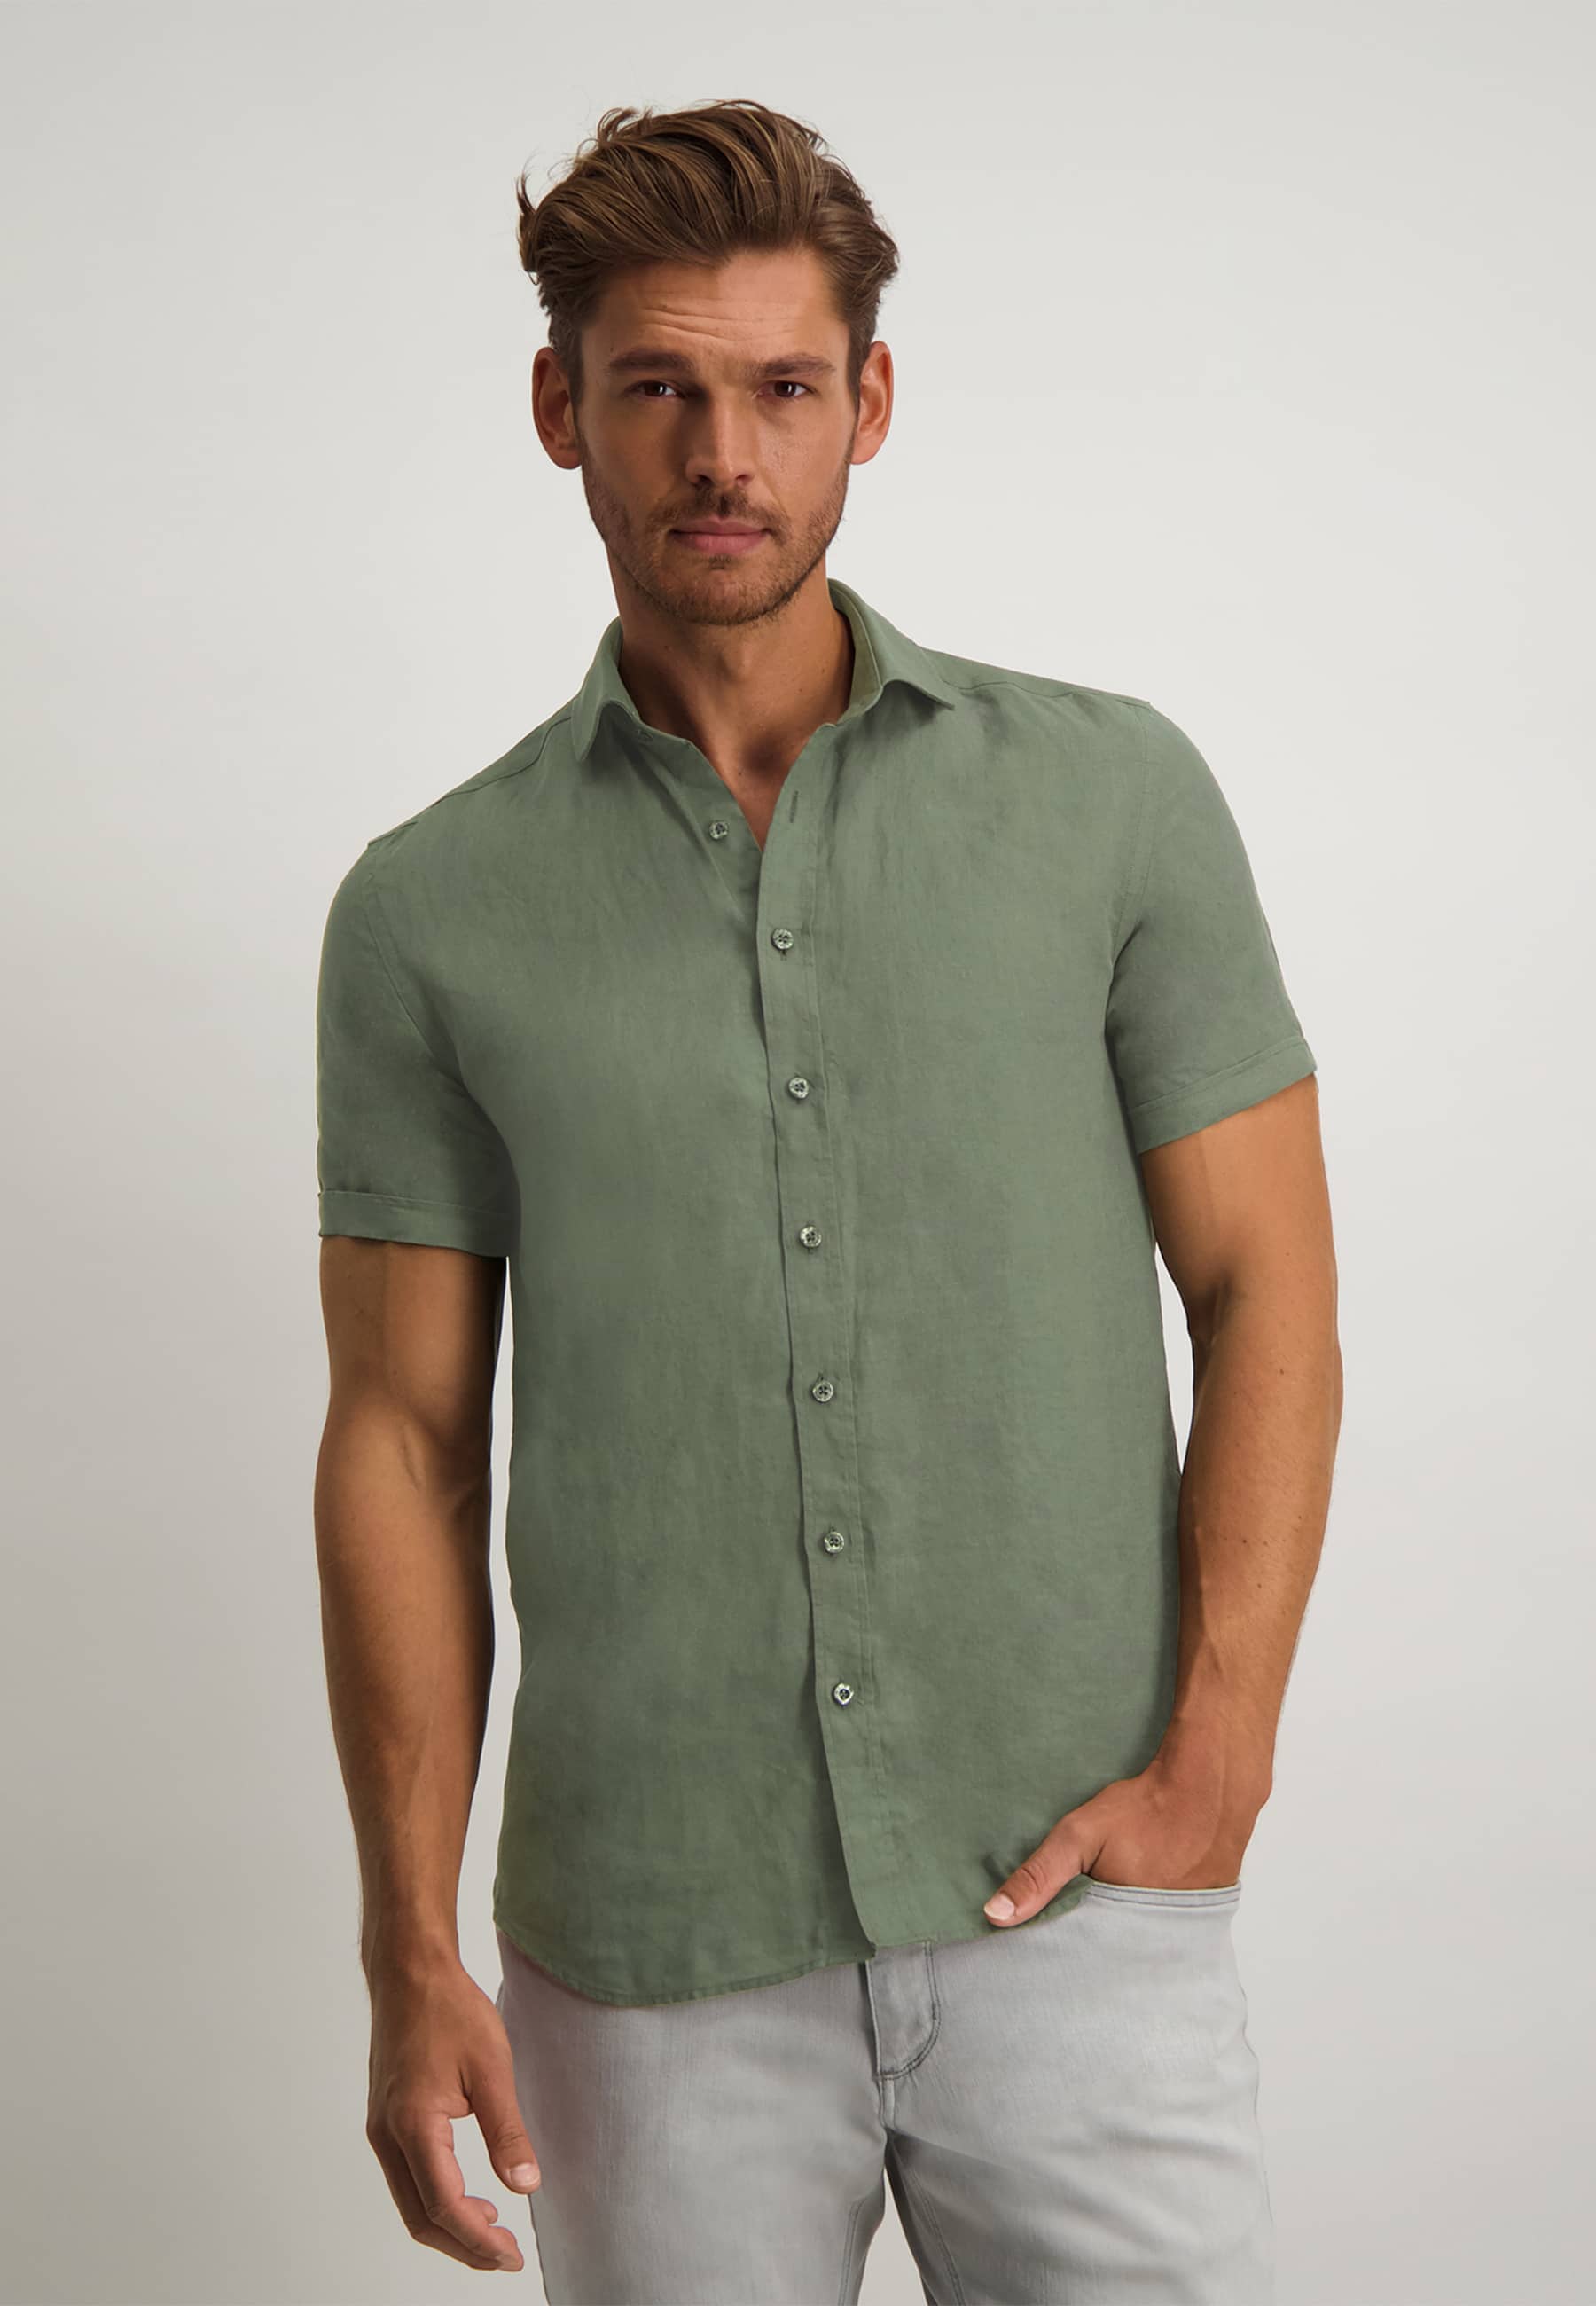 Shirt in 100% linen - moss green plain